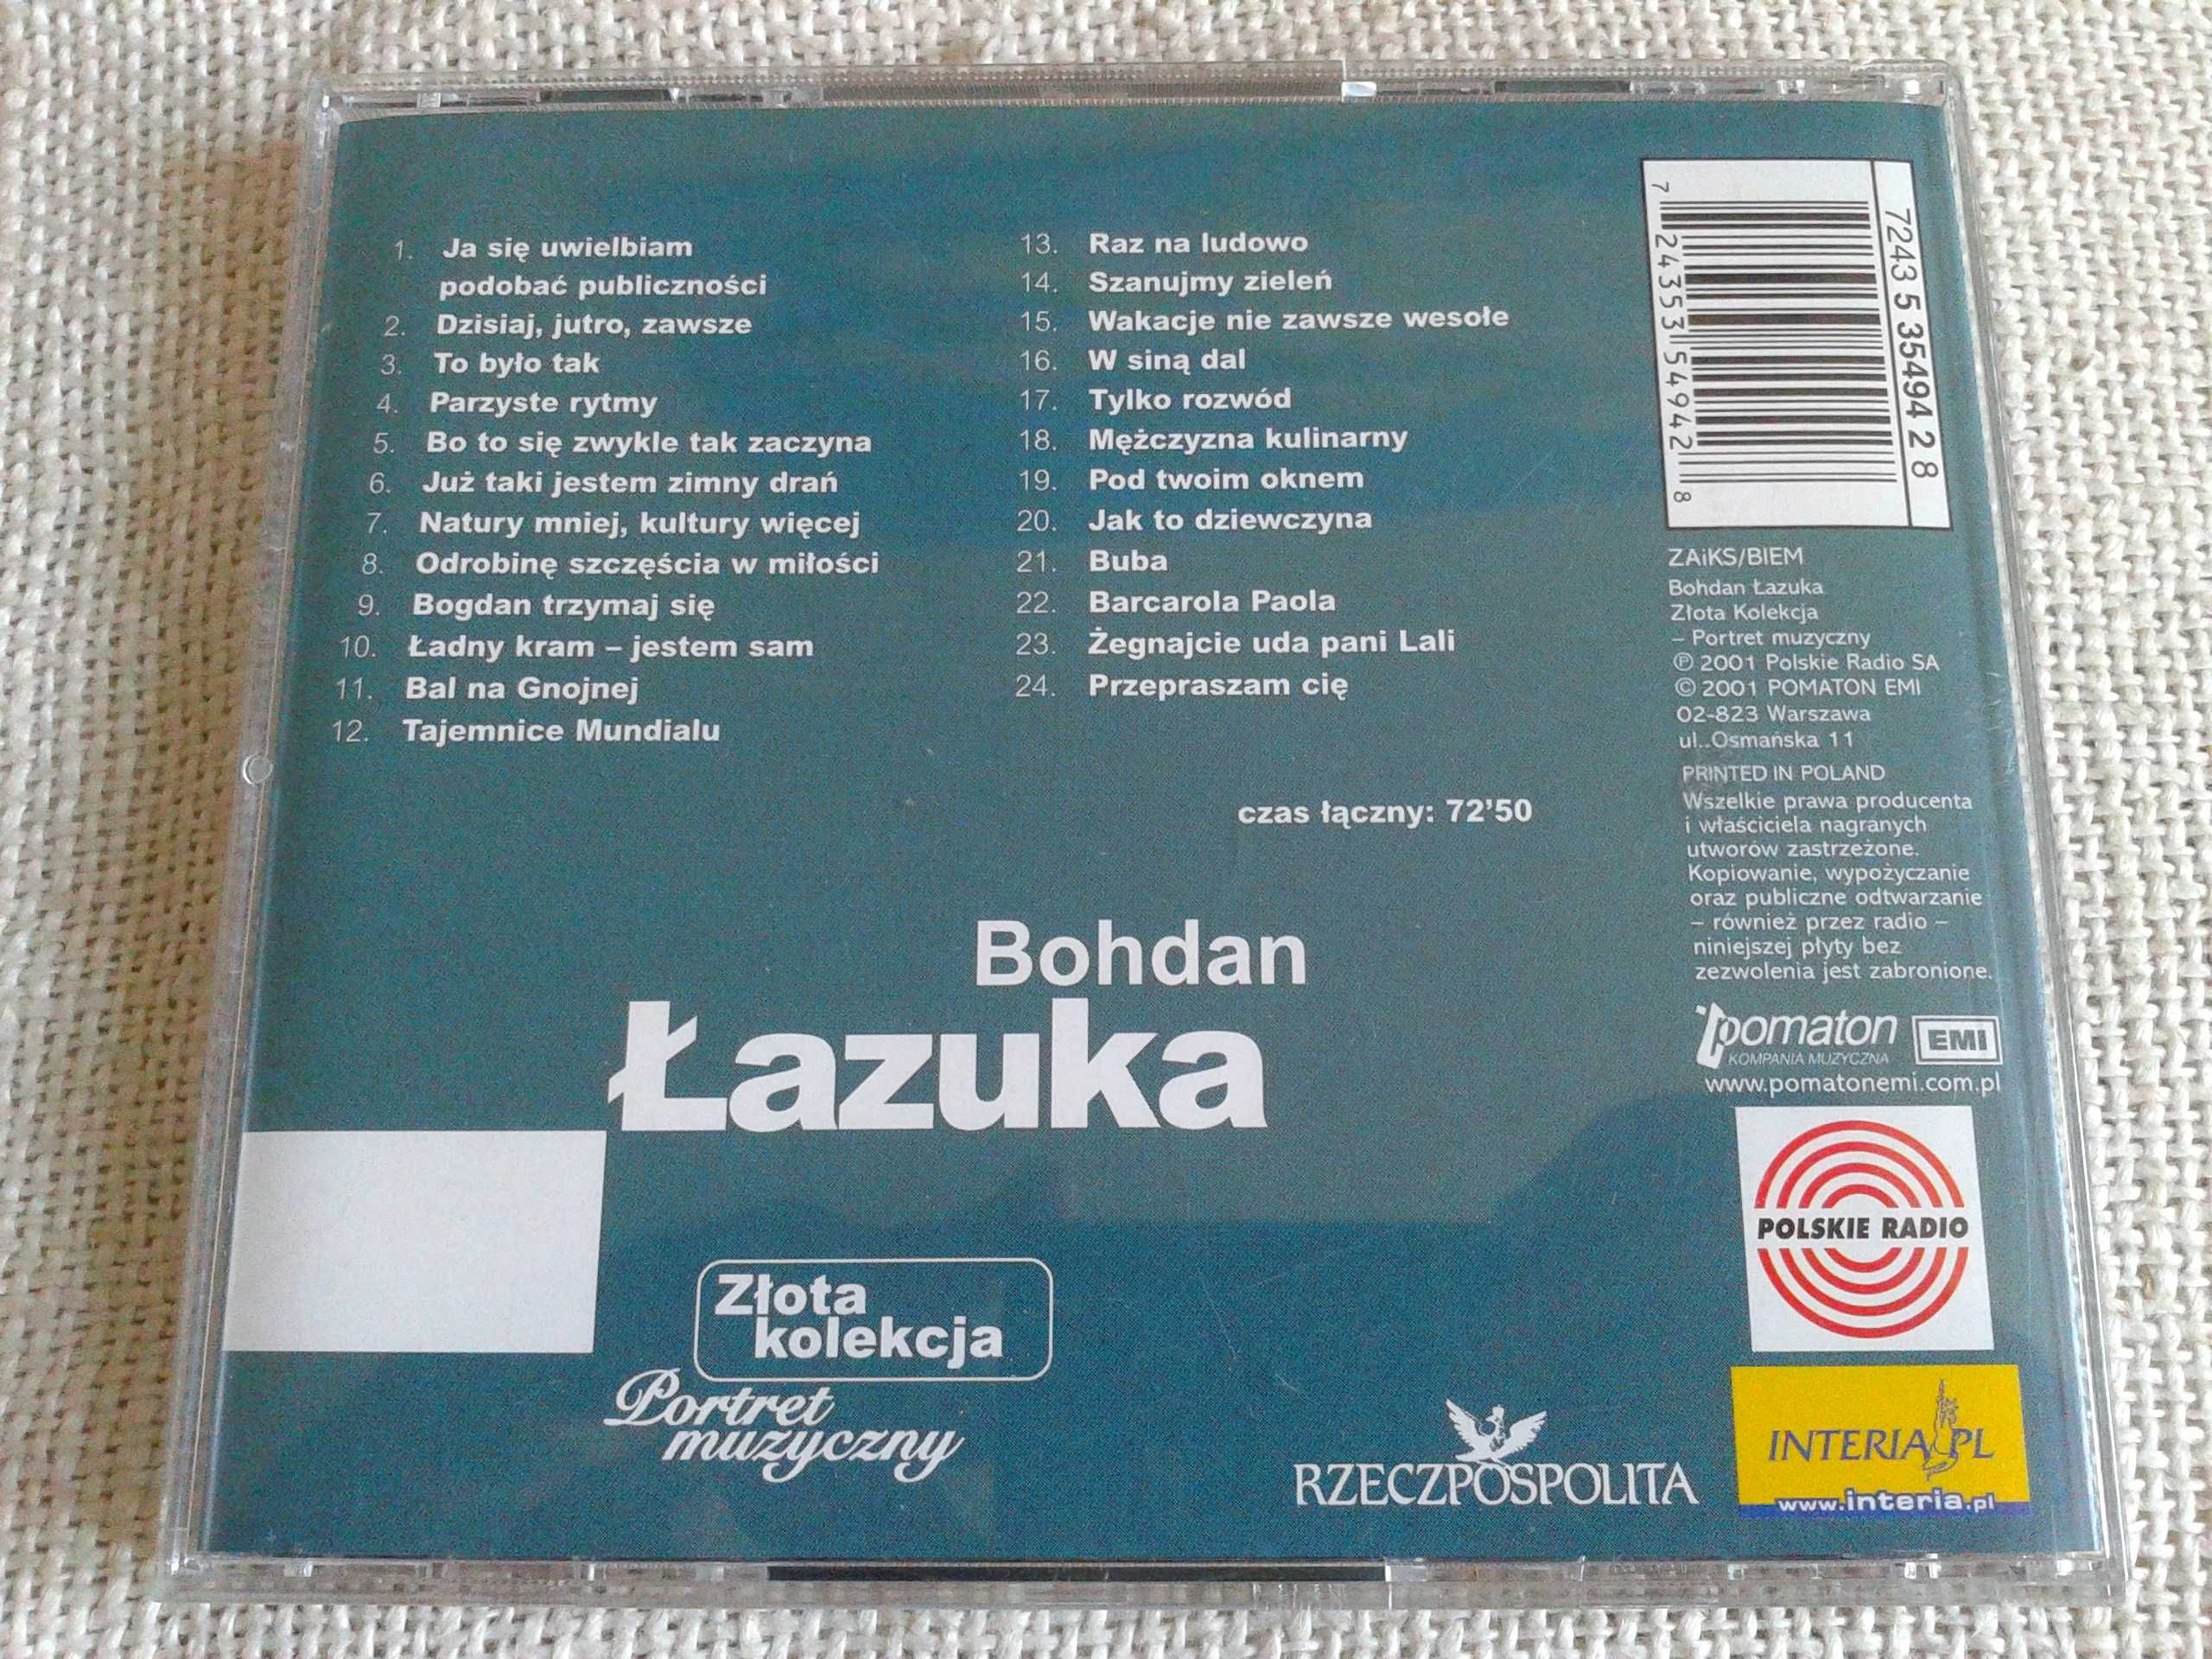 Bohdan Łazuka – Złota Kolekcja, Portret Muzyczny  CD